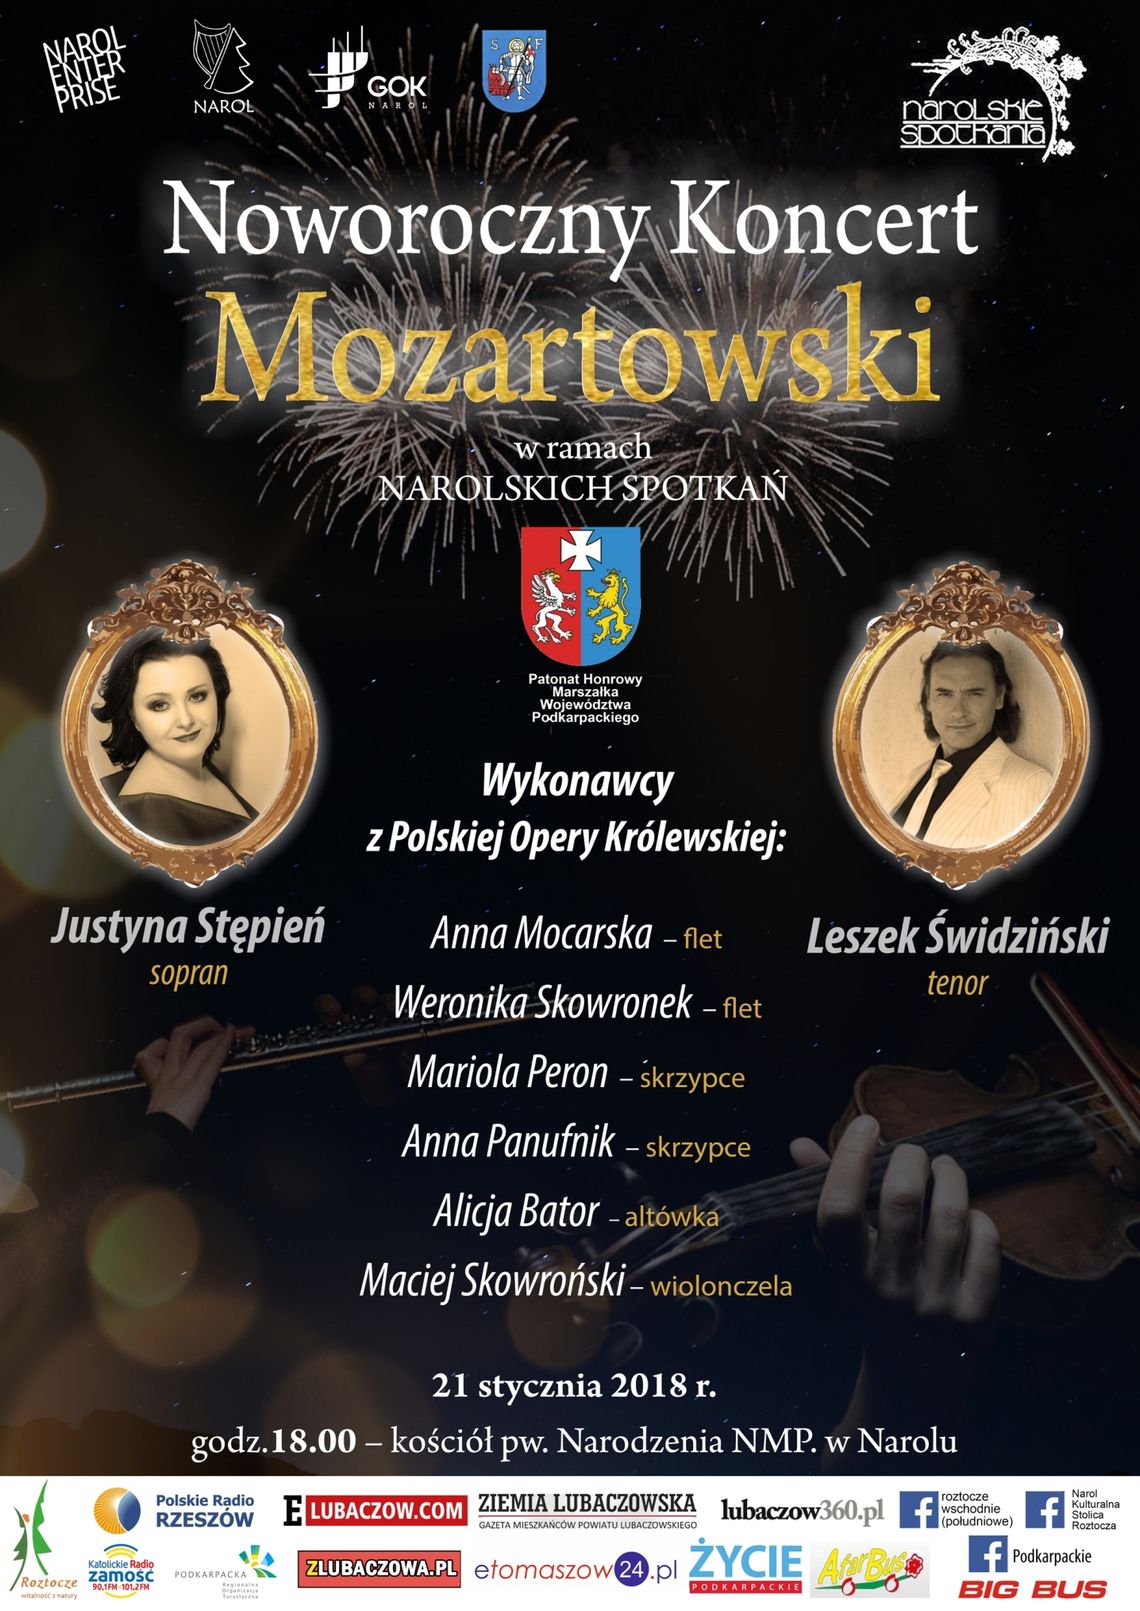 Noworoczny Koncert Mozartowski